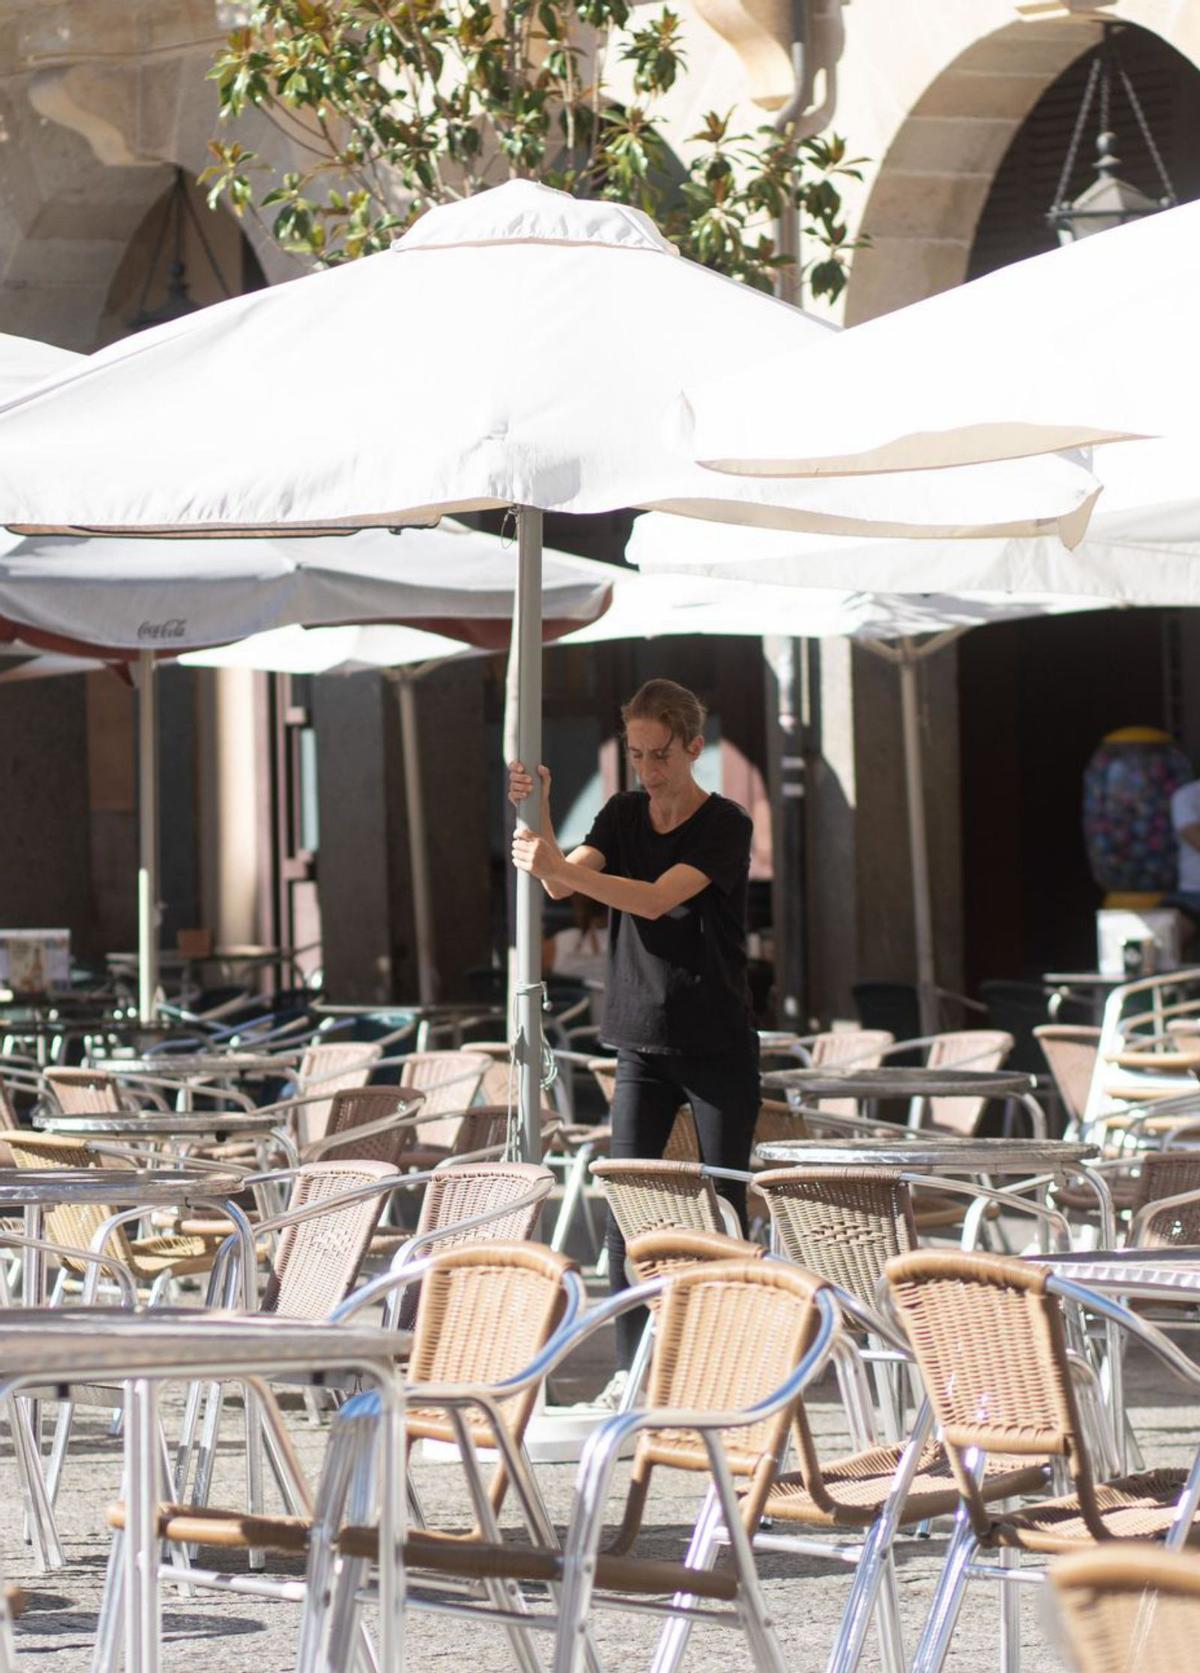 Una camarera coloca sombrillas en la terraza de un bar. | Emilio Fraile